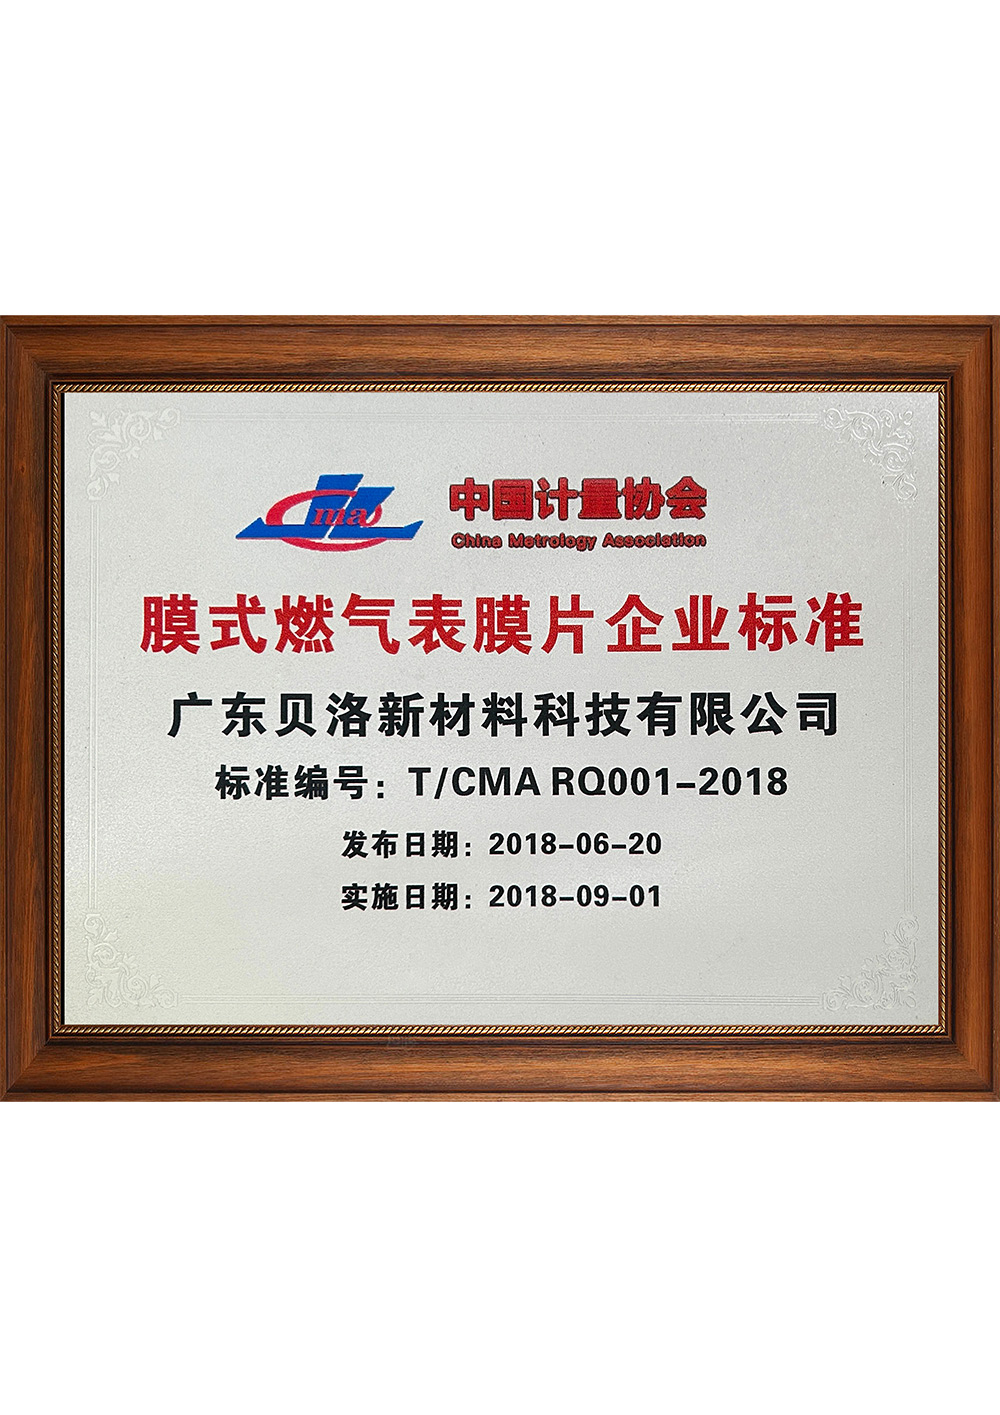 中国计量协会膜式燃气表膜片企业标准 201809